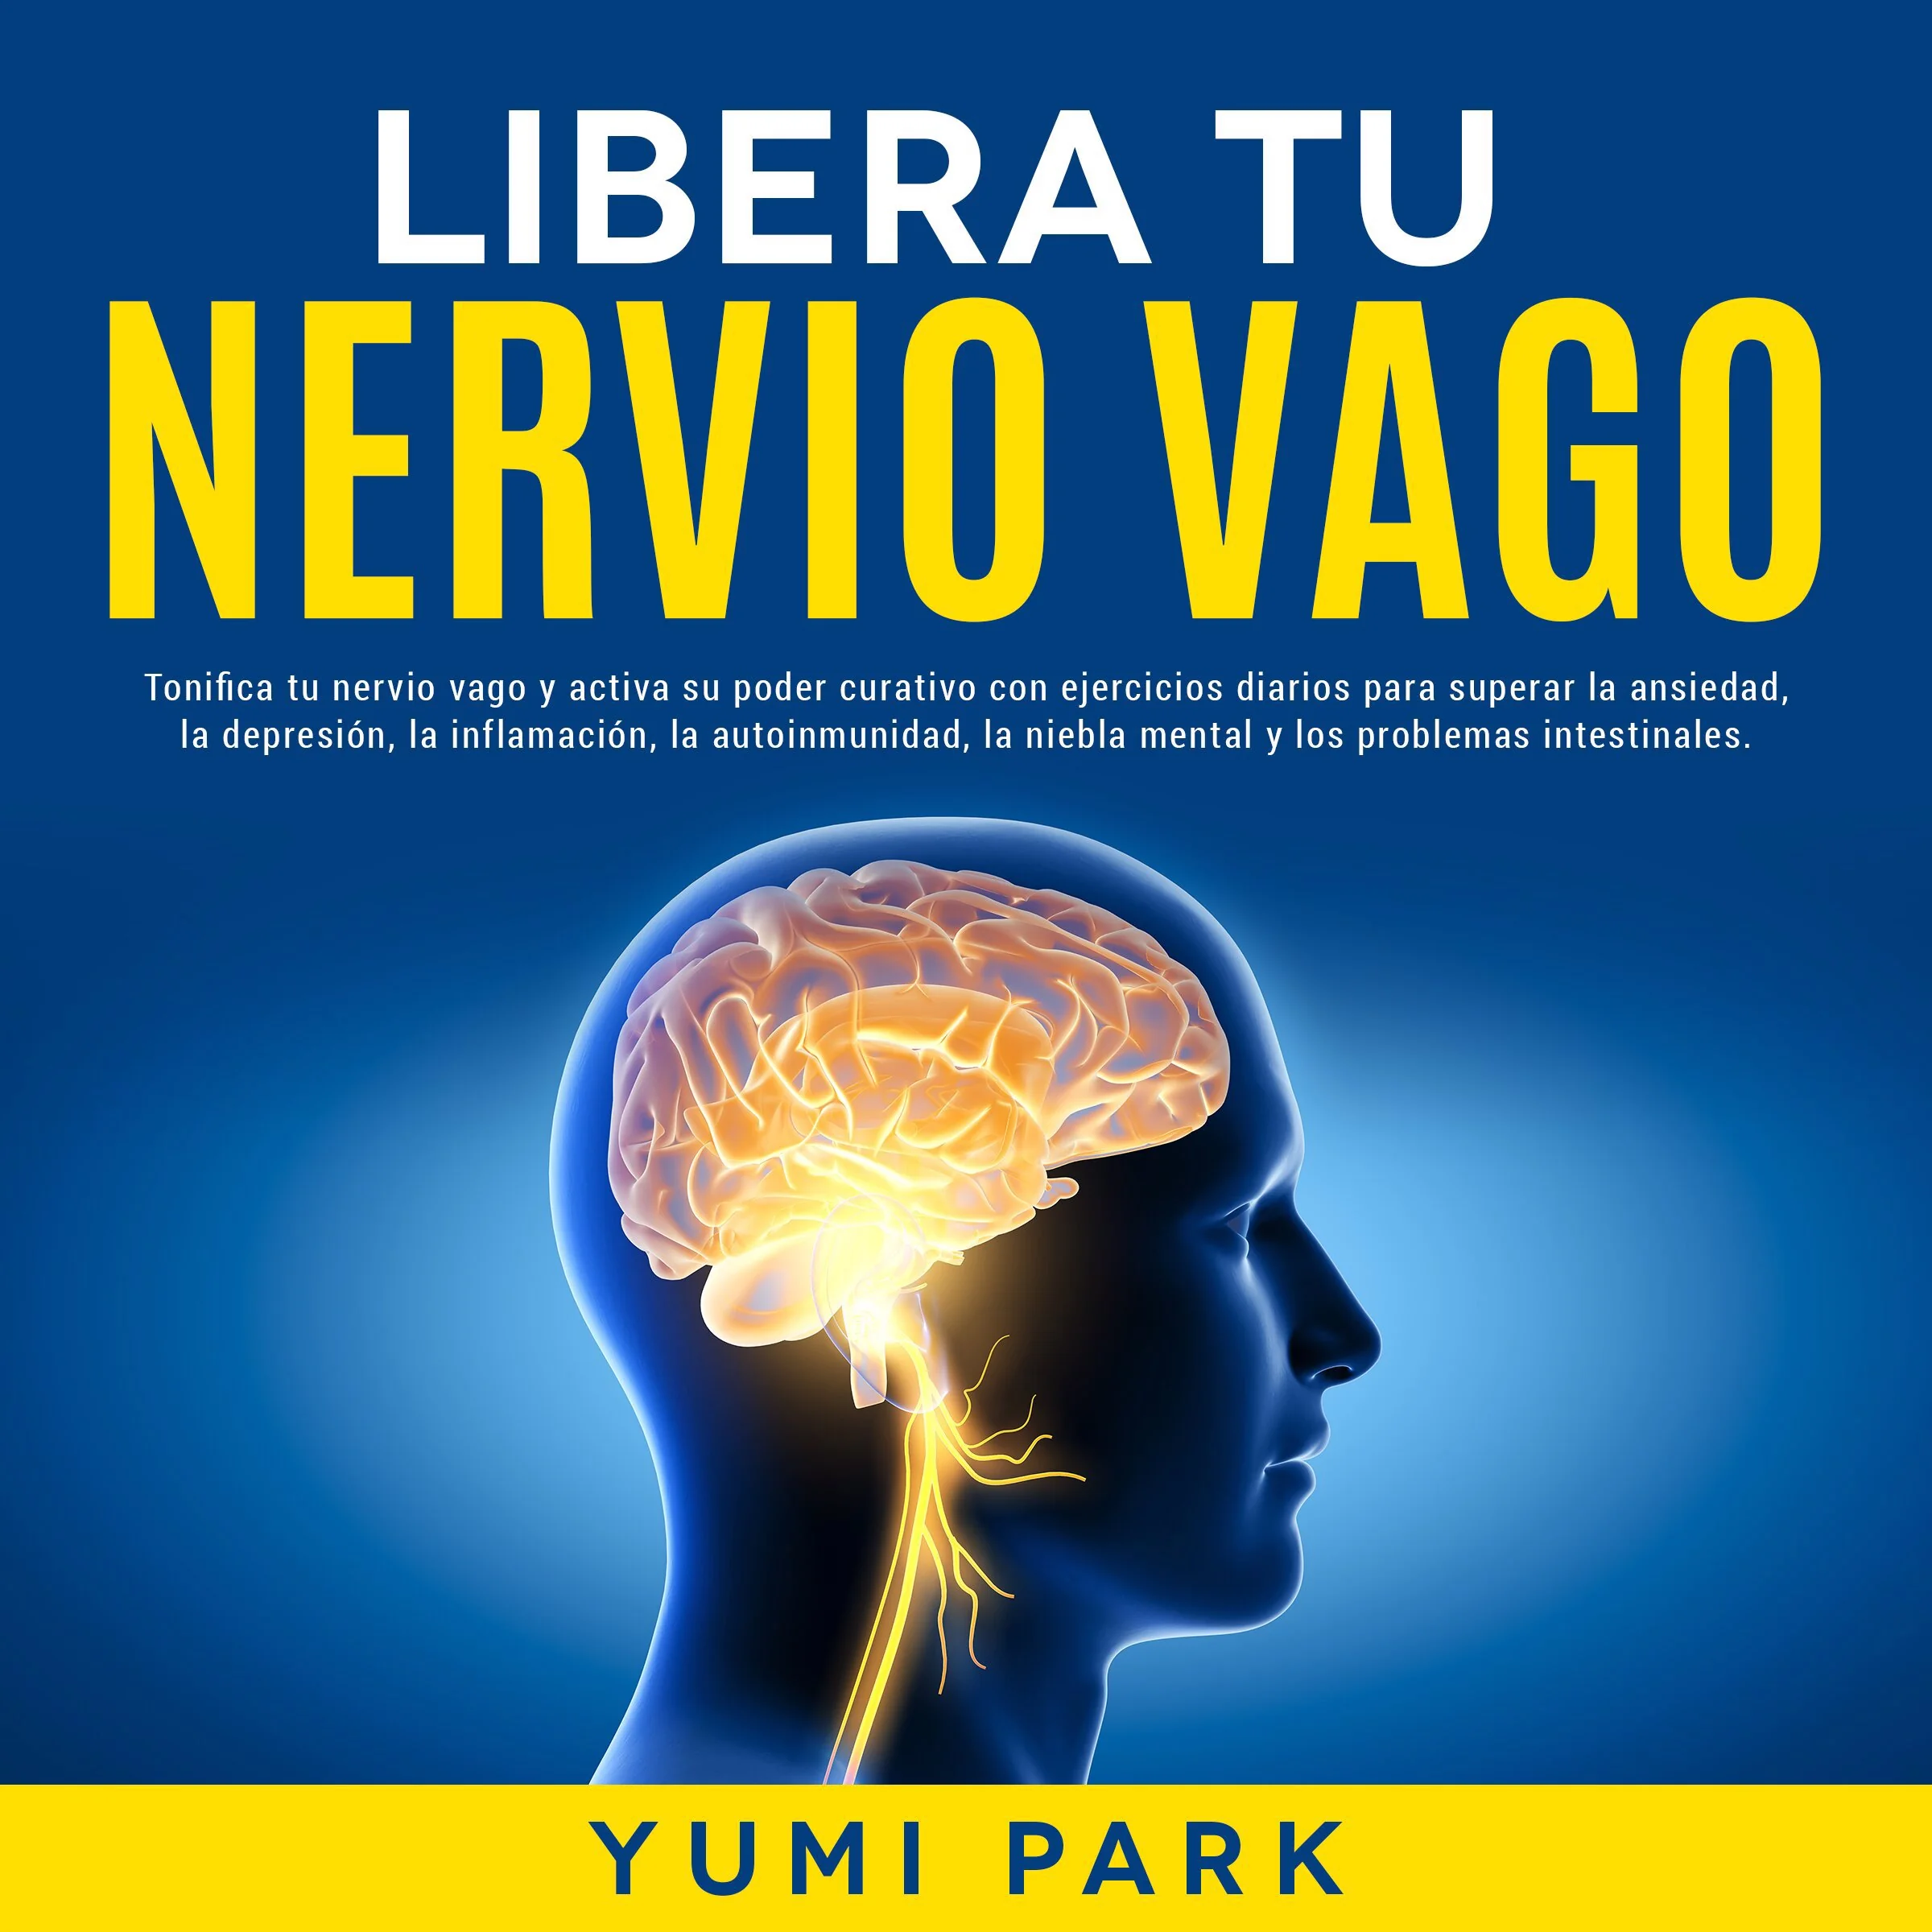 Libera Tu Nervio Vago: Tonifica tu nervio vago y activa su poder curativo con ejercicios diarios para superar la ansiedad, la depresión, la inflamación, la autoinmunidad, la niebla mental y los problemas intestinales. Audiobook by Yumi Park